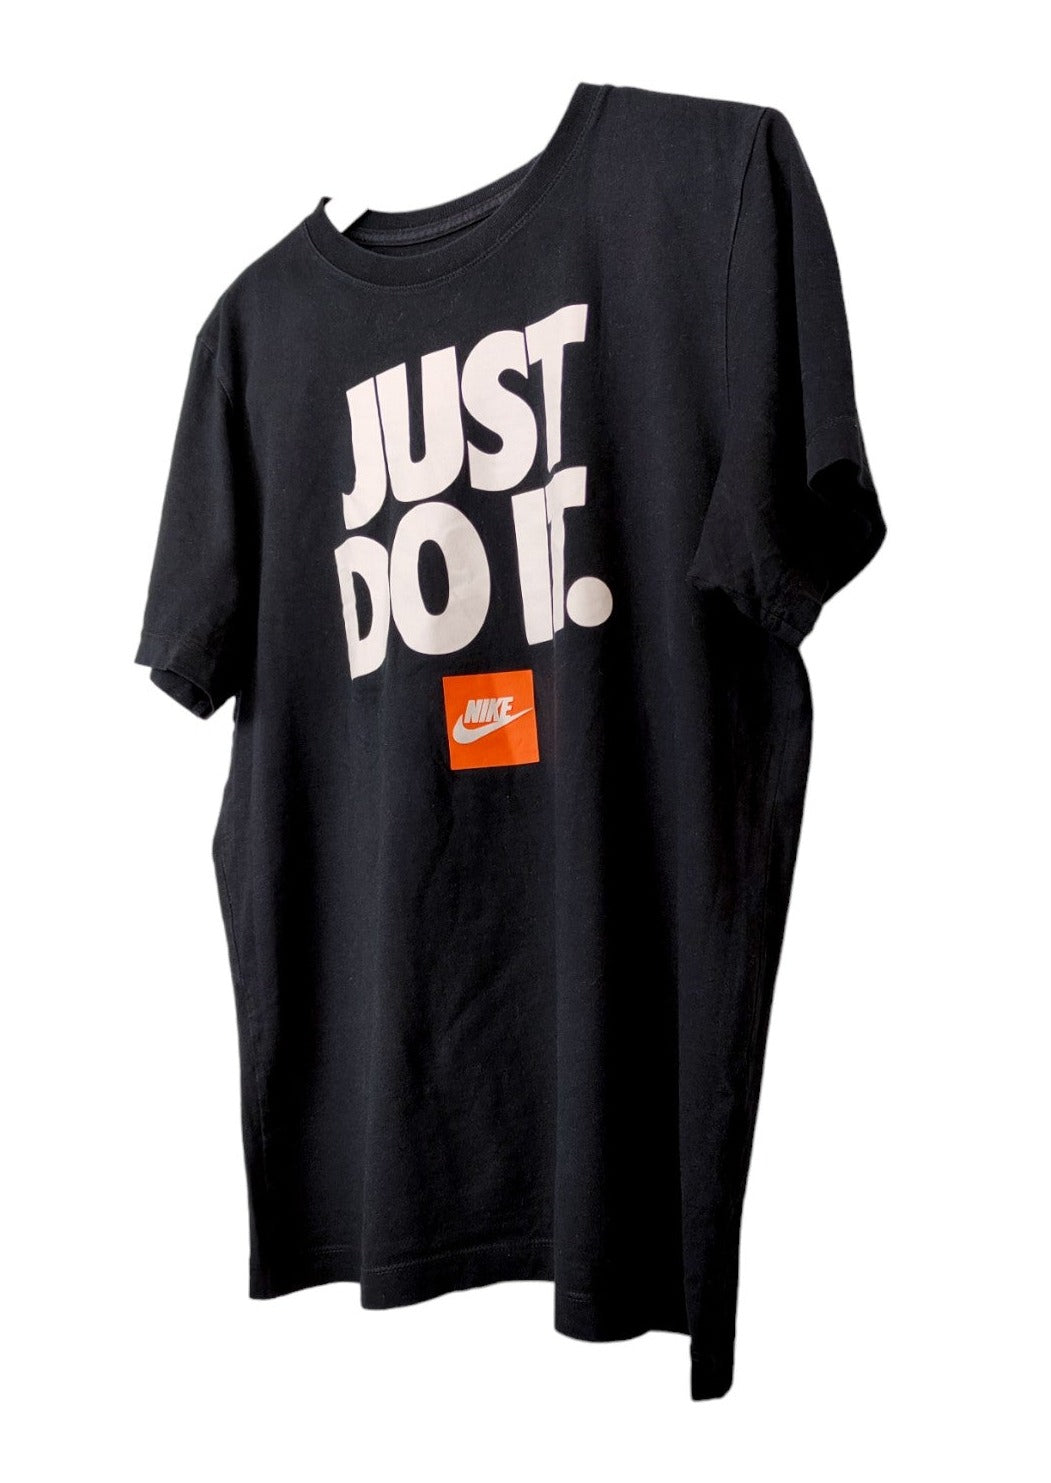 Αθλητική Ανδρική Μπλούζα - T-Shirt NIKE σε Μαύρο χρώμα (Medium)